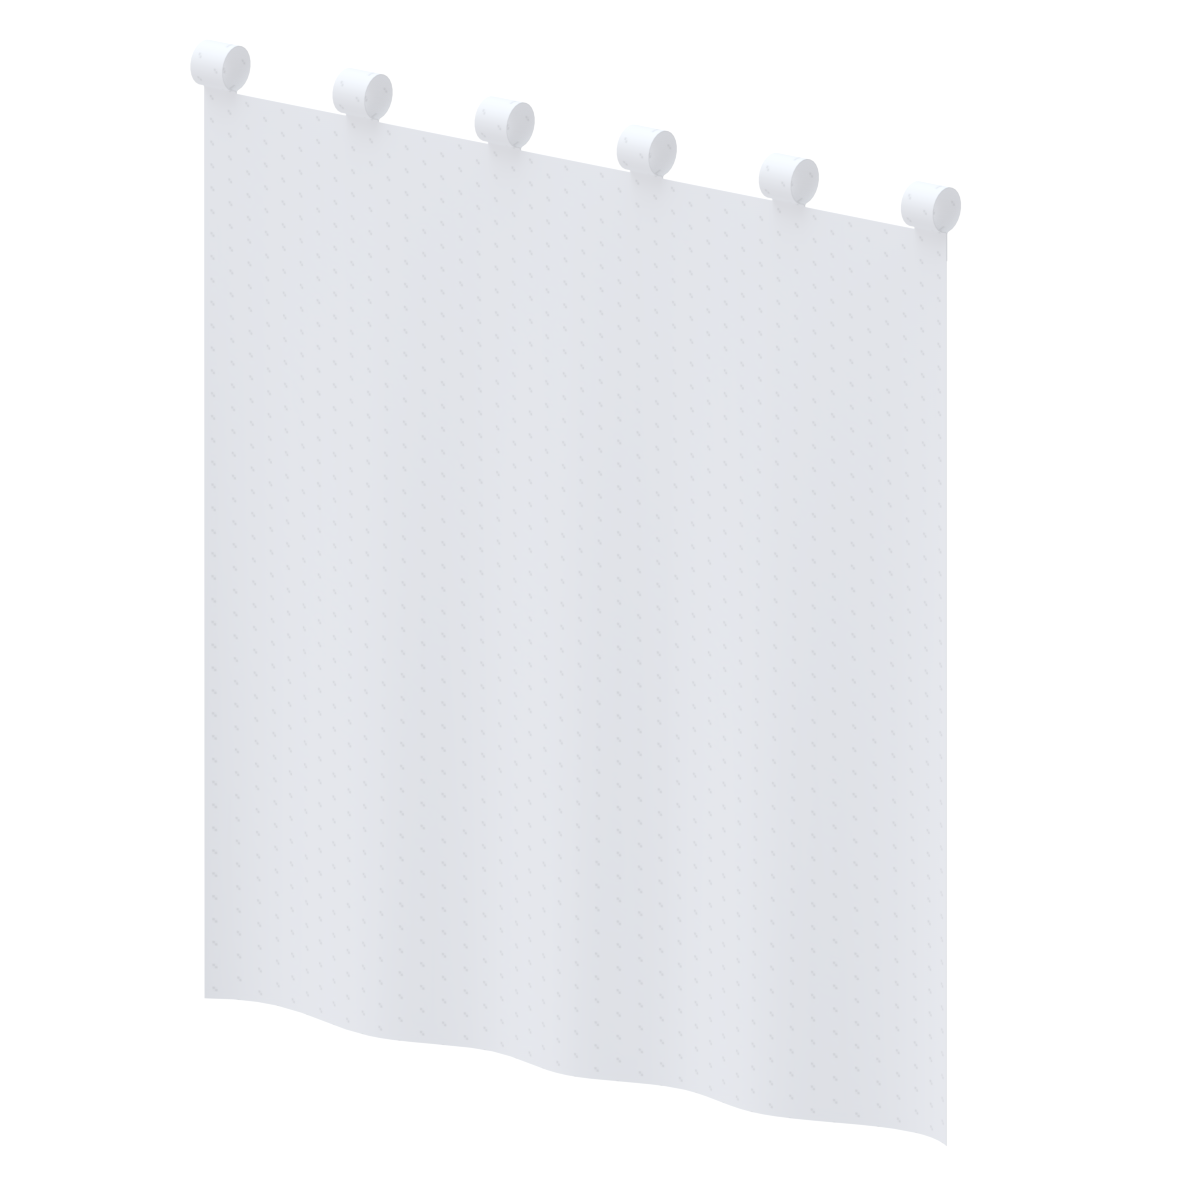 Care Rideau anti-éclaboussure, 750 x 690 x 1 mm, Blanc